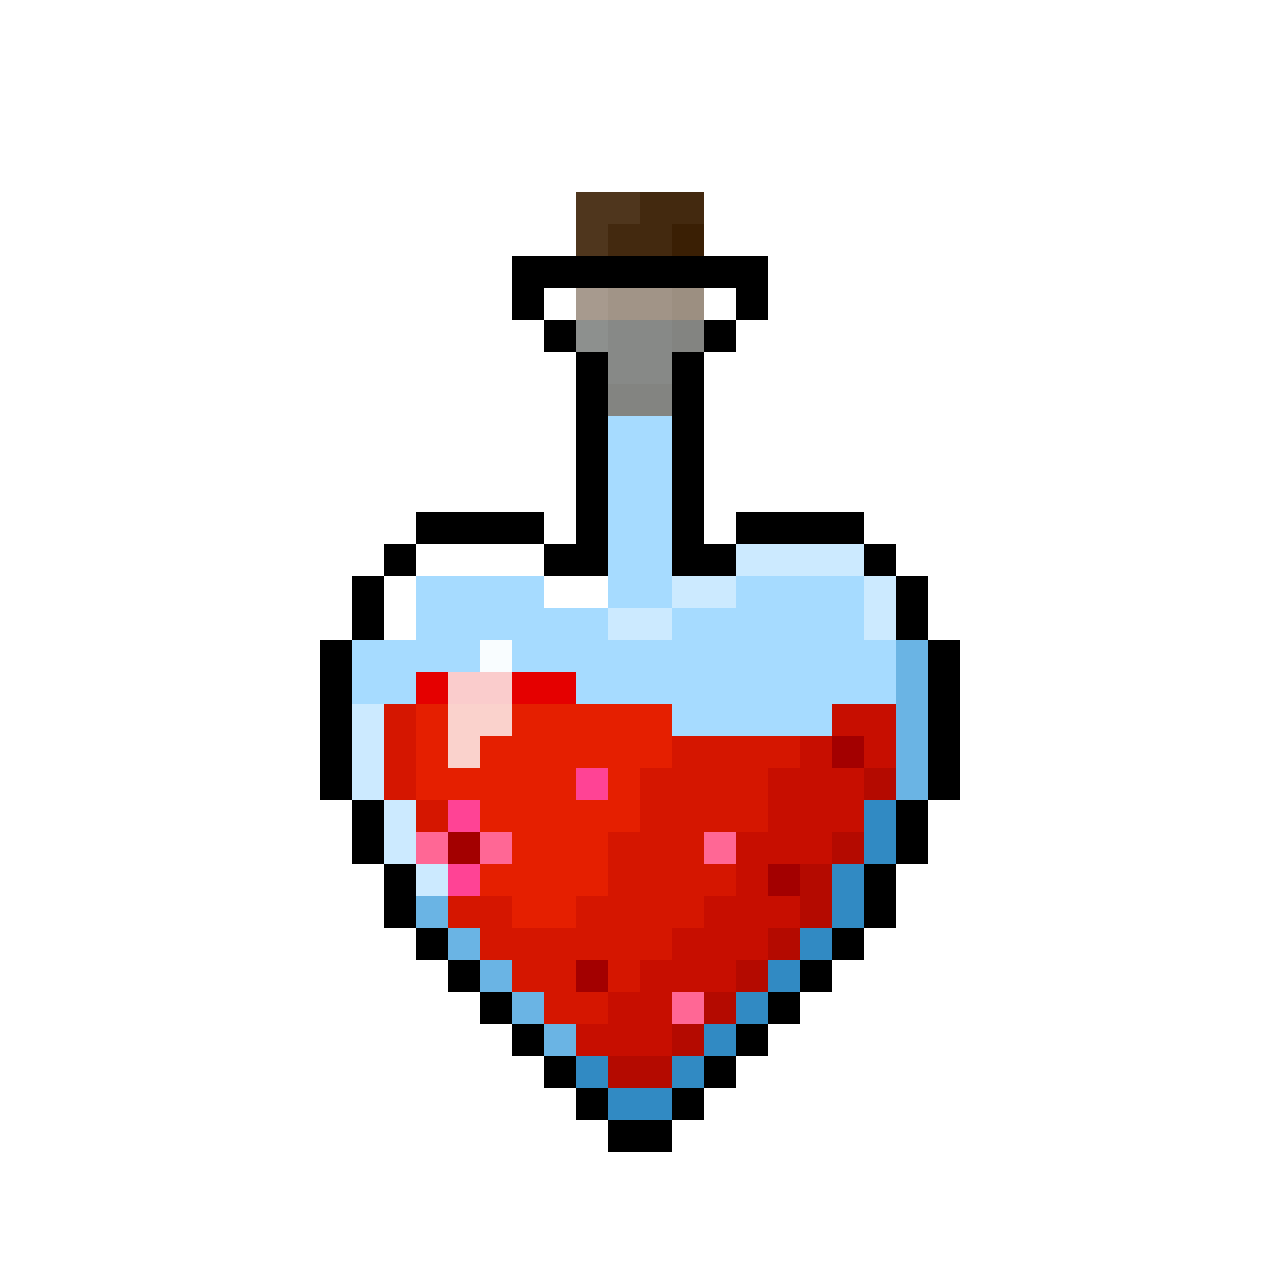 Commission: Love potion [32x32 px]